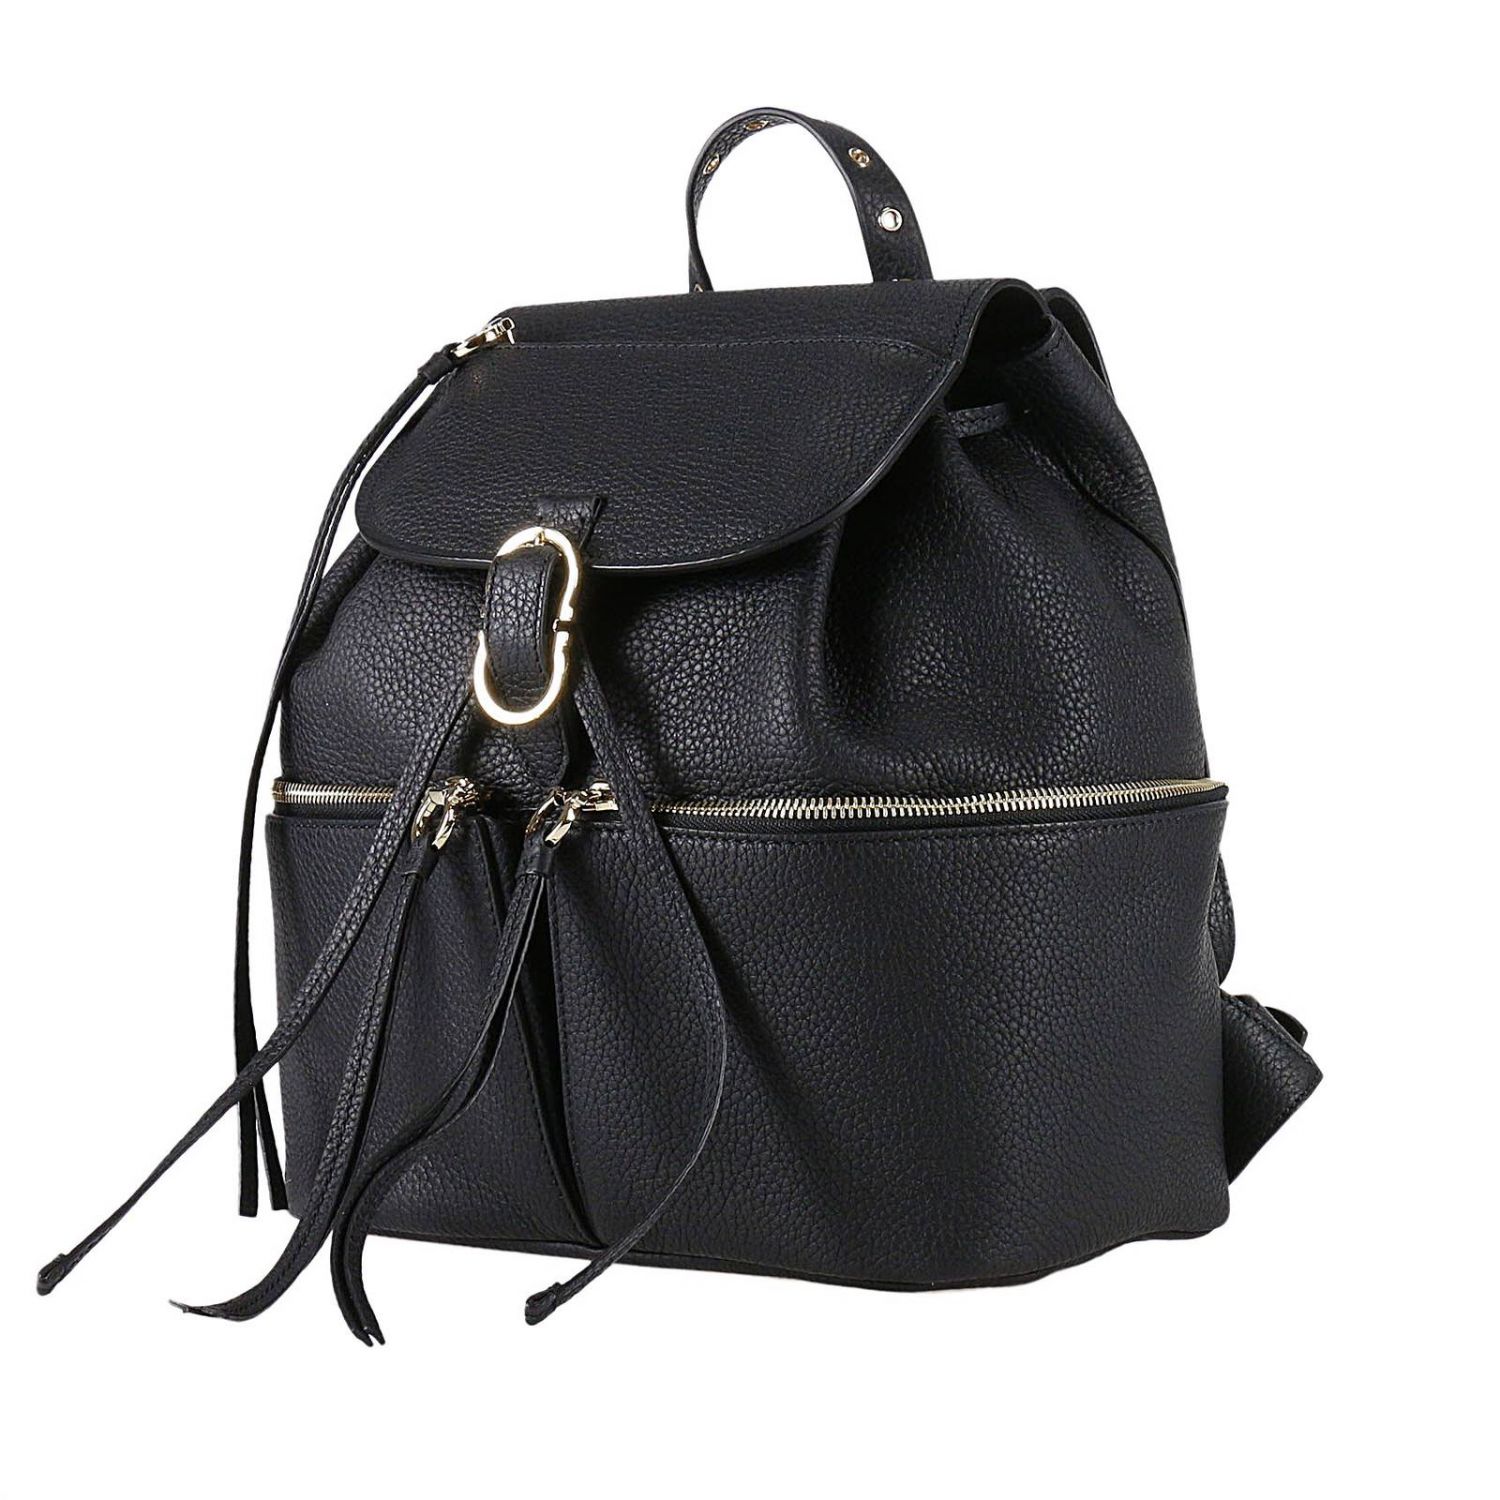 Salvatore Ferragamo Outlet: Shoulder bag women - Black | Backpack ...